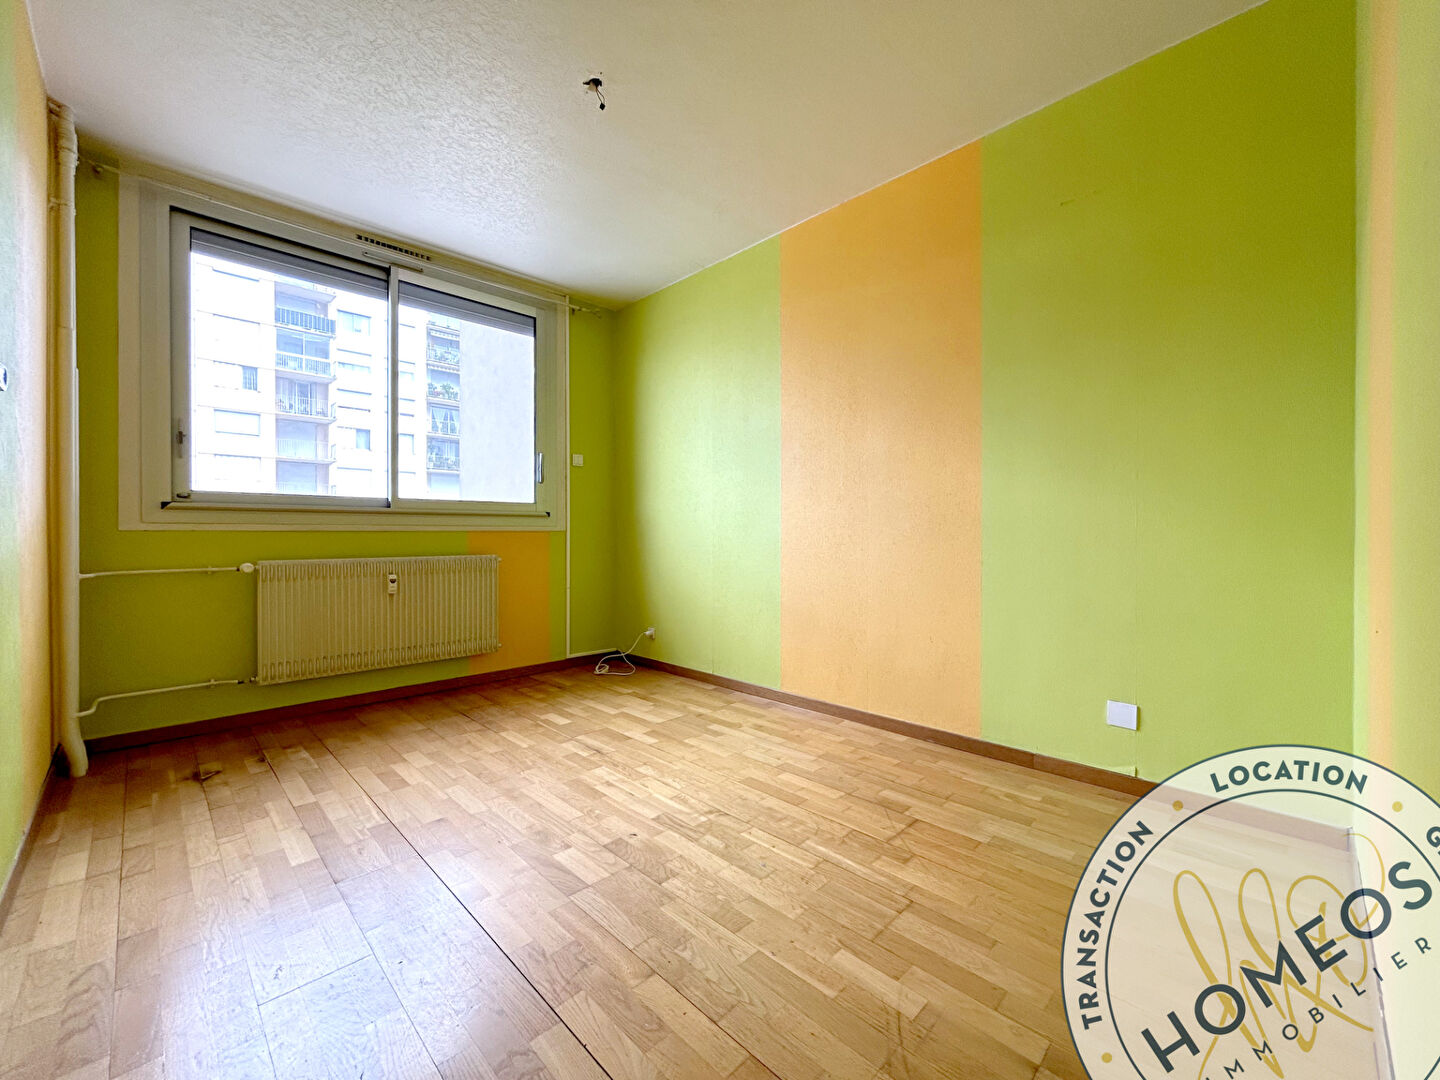 
Appartement Bourg En Bresse 3 pièce(s) 63.84 m2
